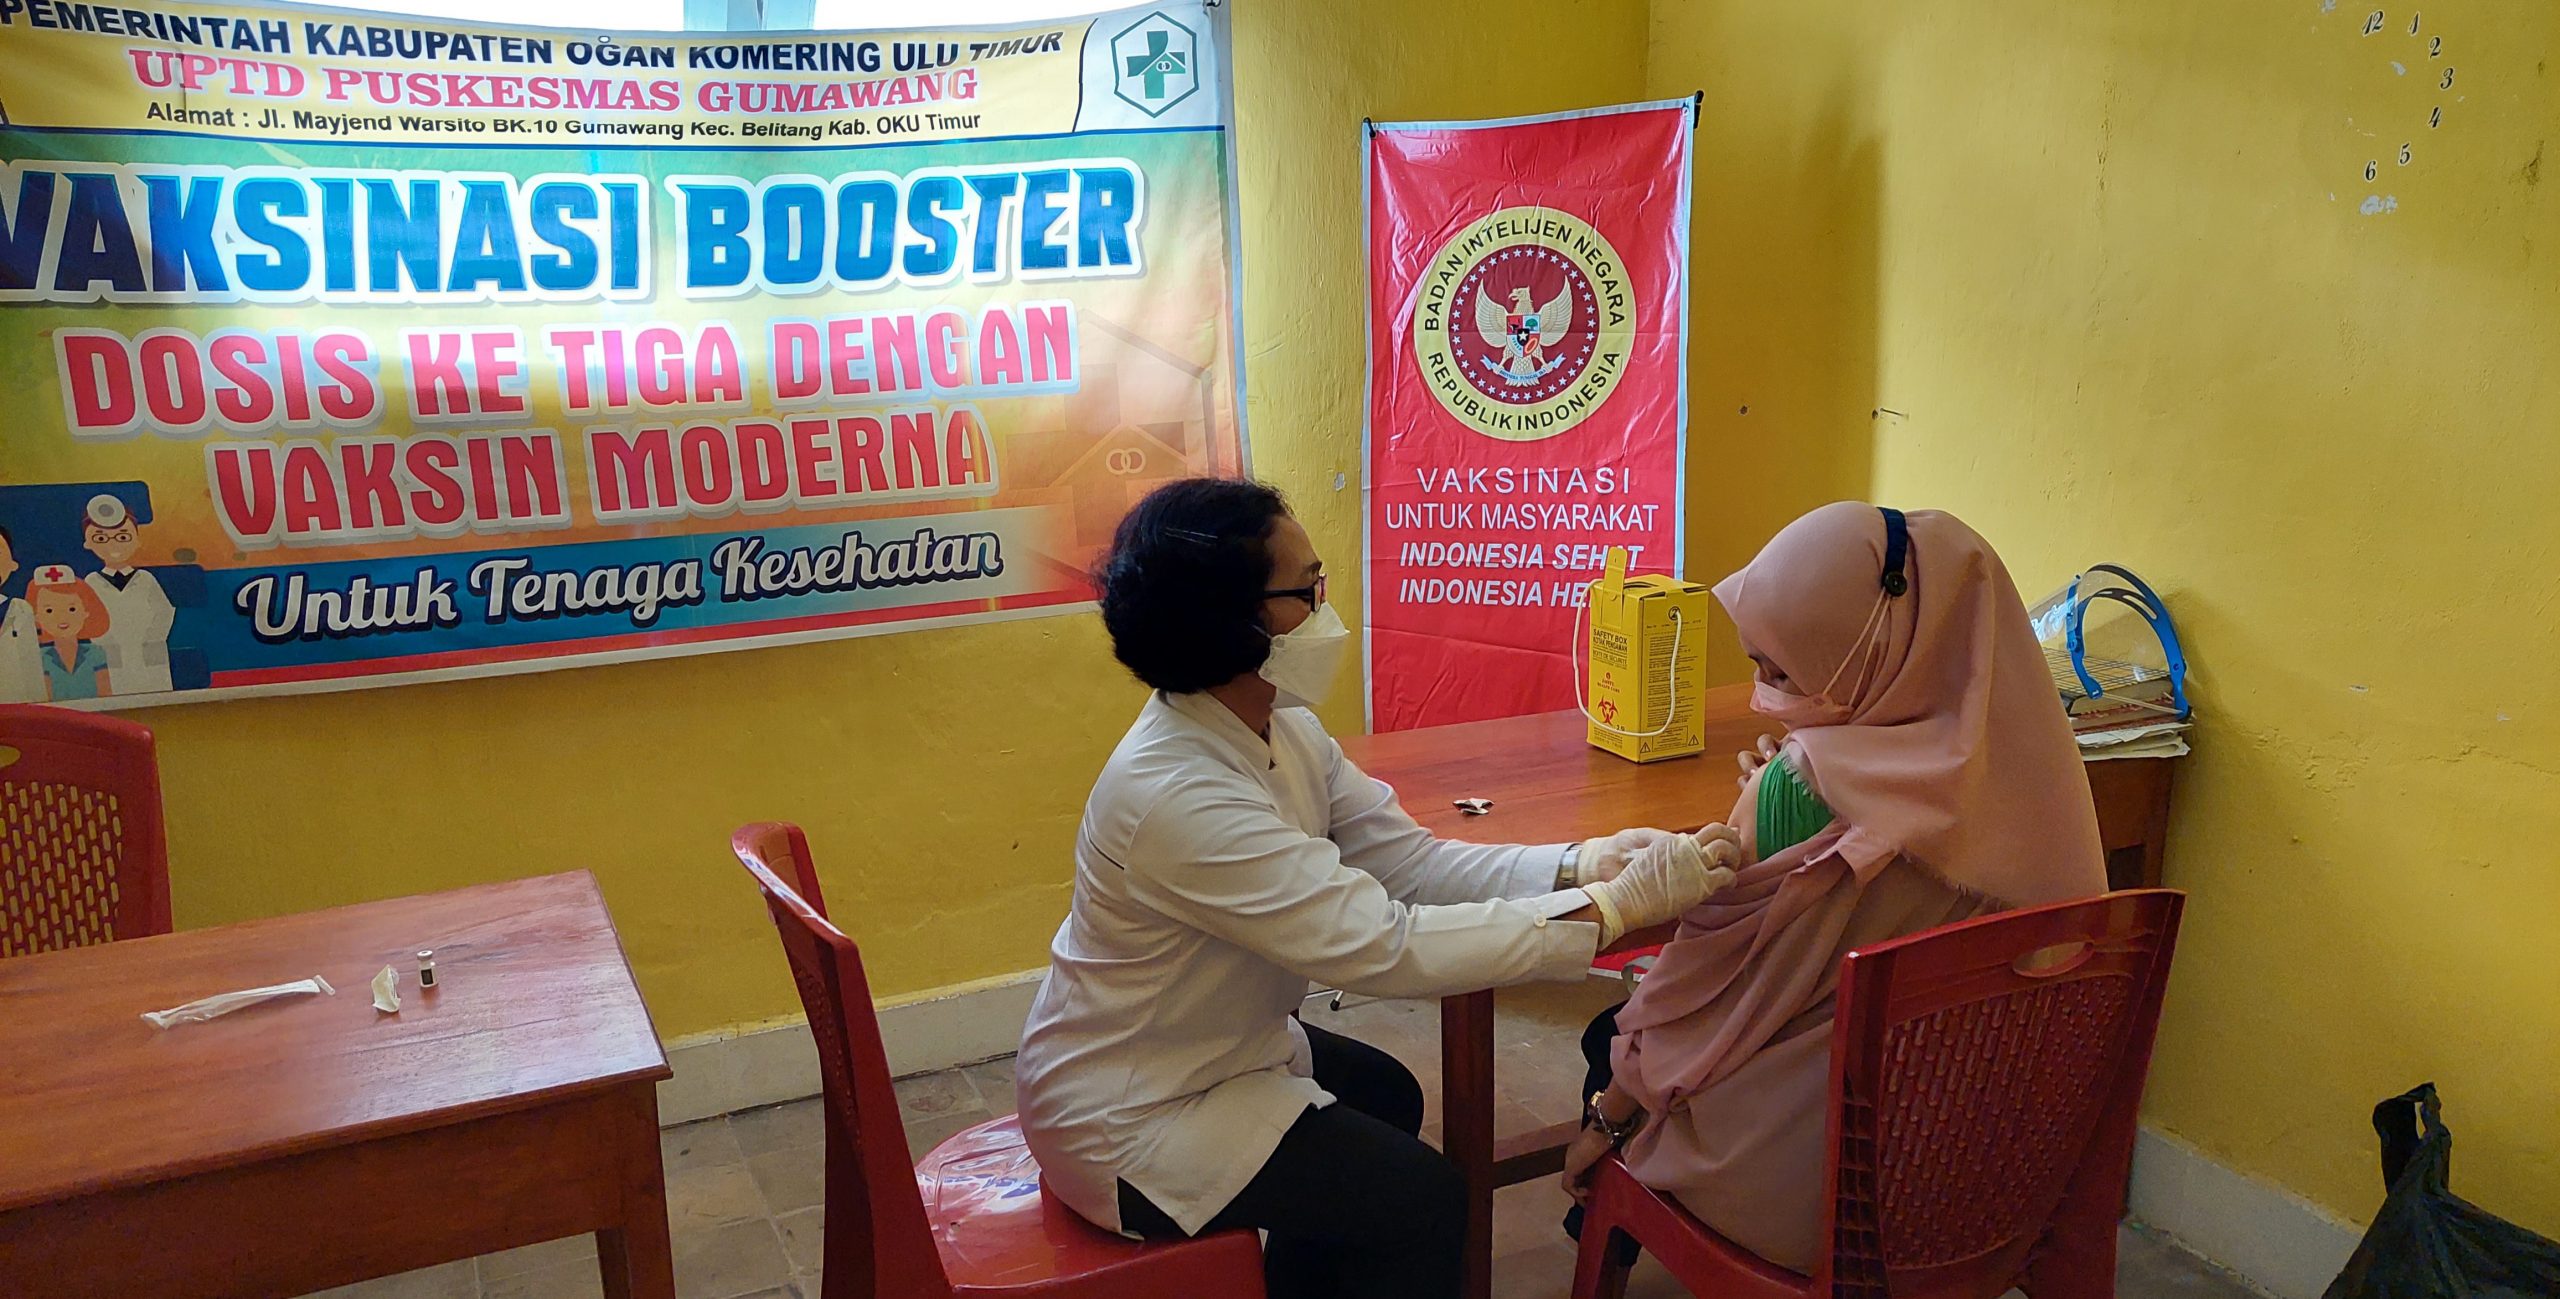 Binda Sumsel Vaksinasi di Puskesmas Gumawang, Seribu Lebih Warga di Kecamatan Ini Sudah Vaksin Booster